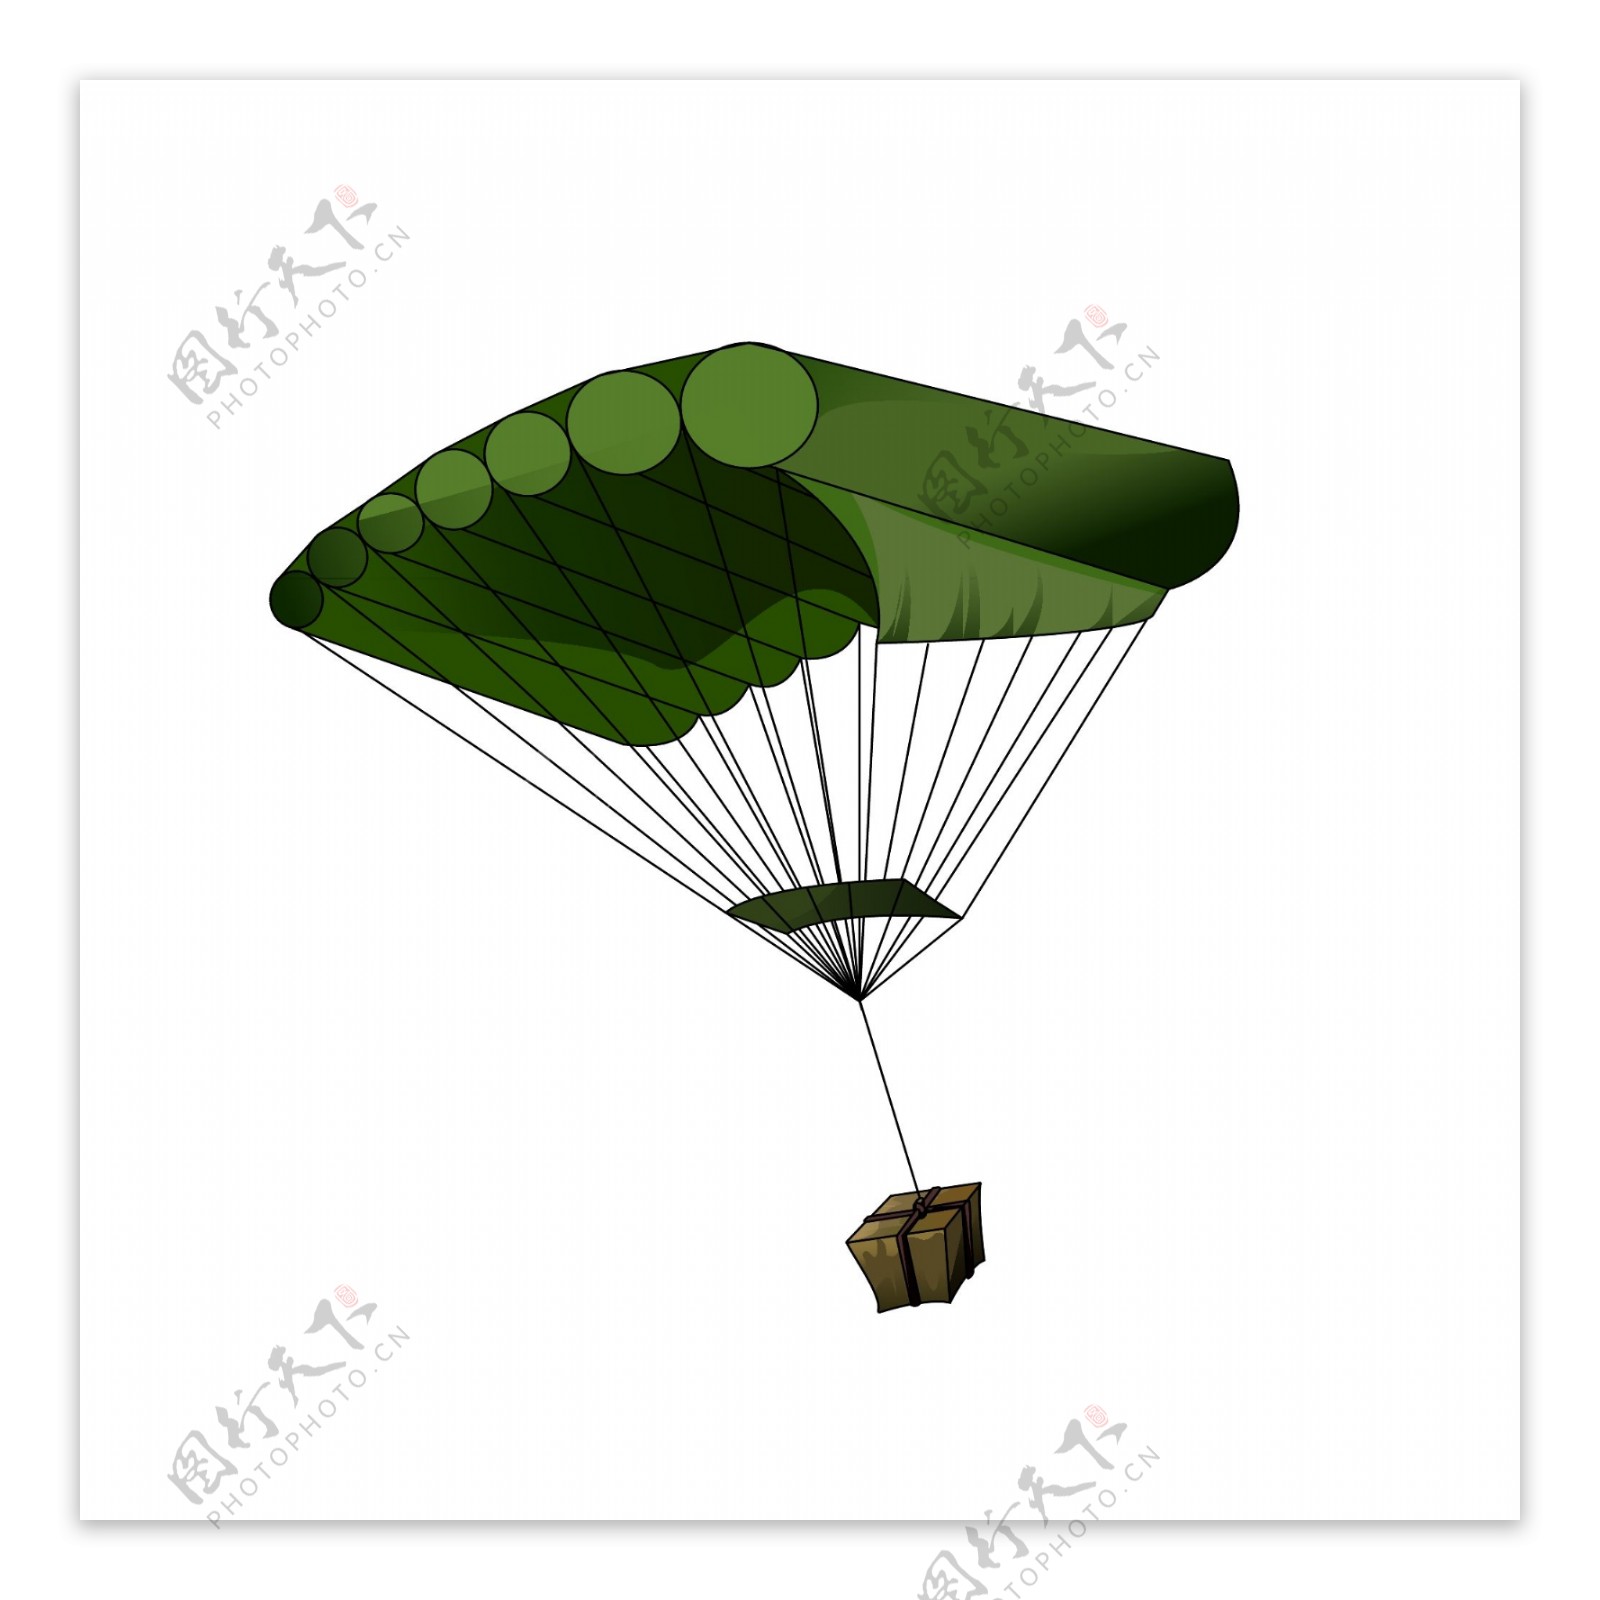 空投绿色降落伞游戏配图